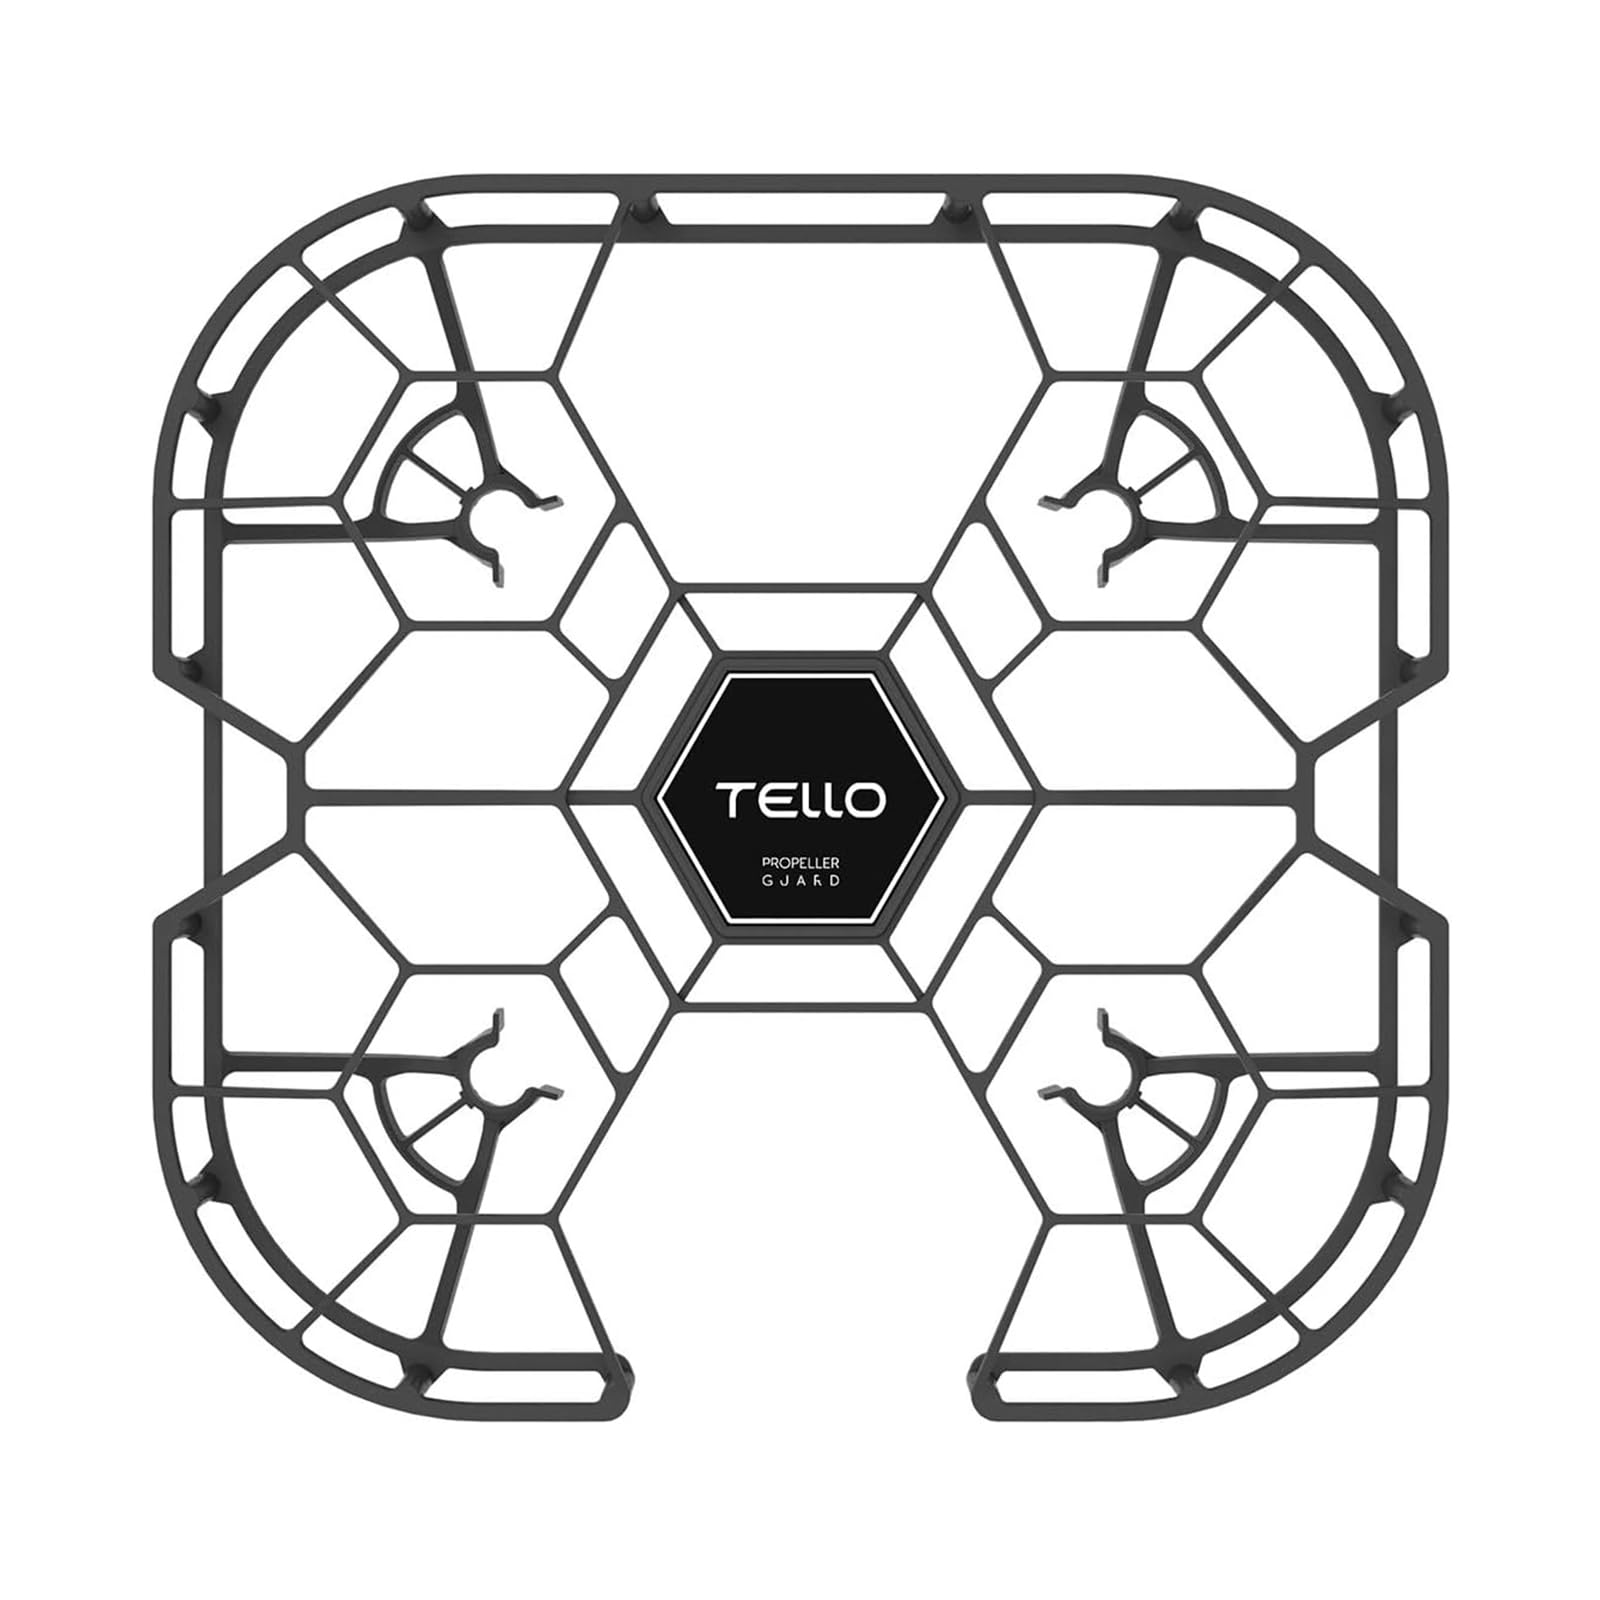 INSYOO Original Square Propeller-Schutz für Tello- Geeignet für DJI Tello/Tello Drohne Prop Teil Zubehör von INSYOO